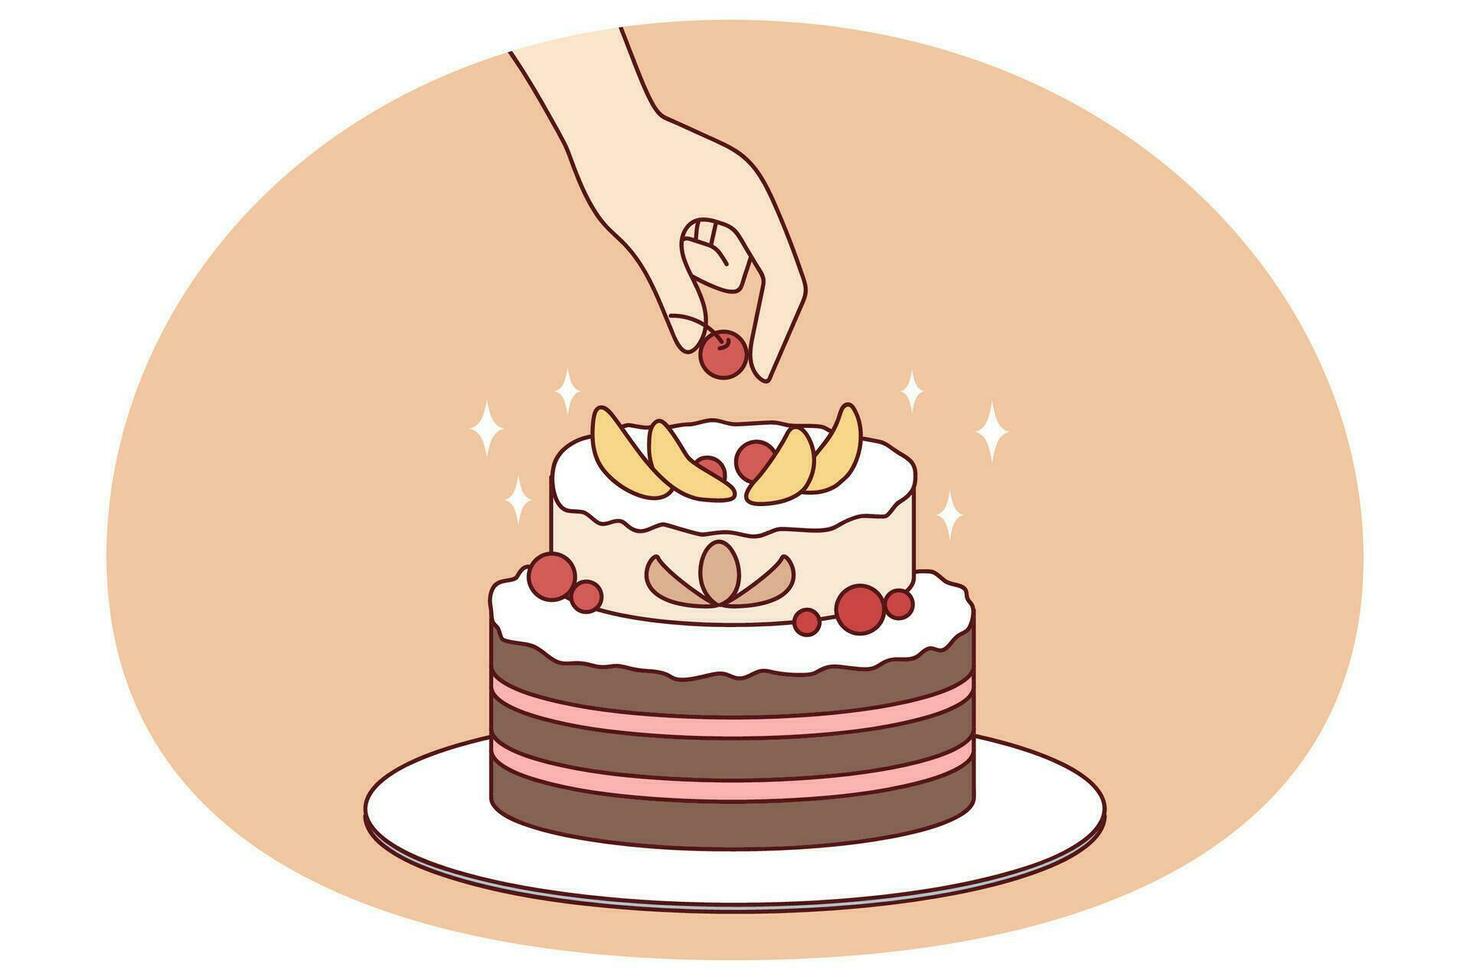 persoon versieren taart met vruchten. chef voorbereidingen treffen eigengemaakt heerlijk taart. toetje en snoepgoed. vlak vector illustratie.